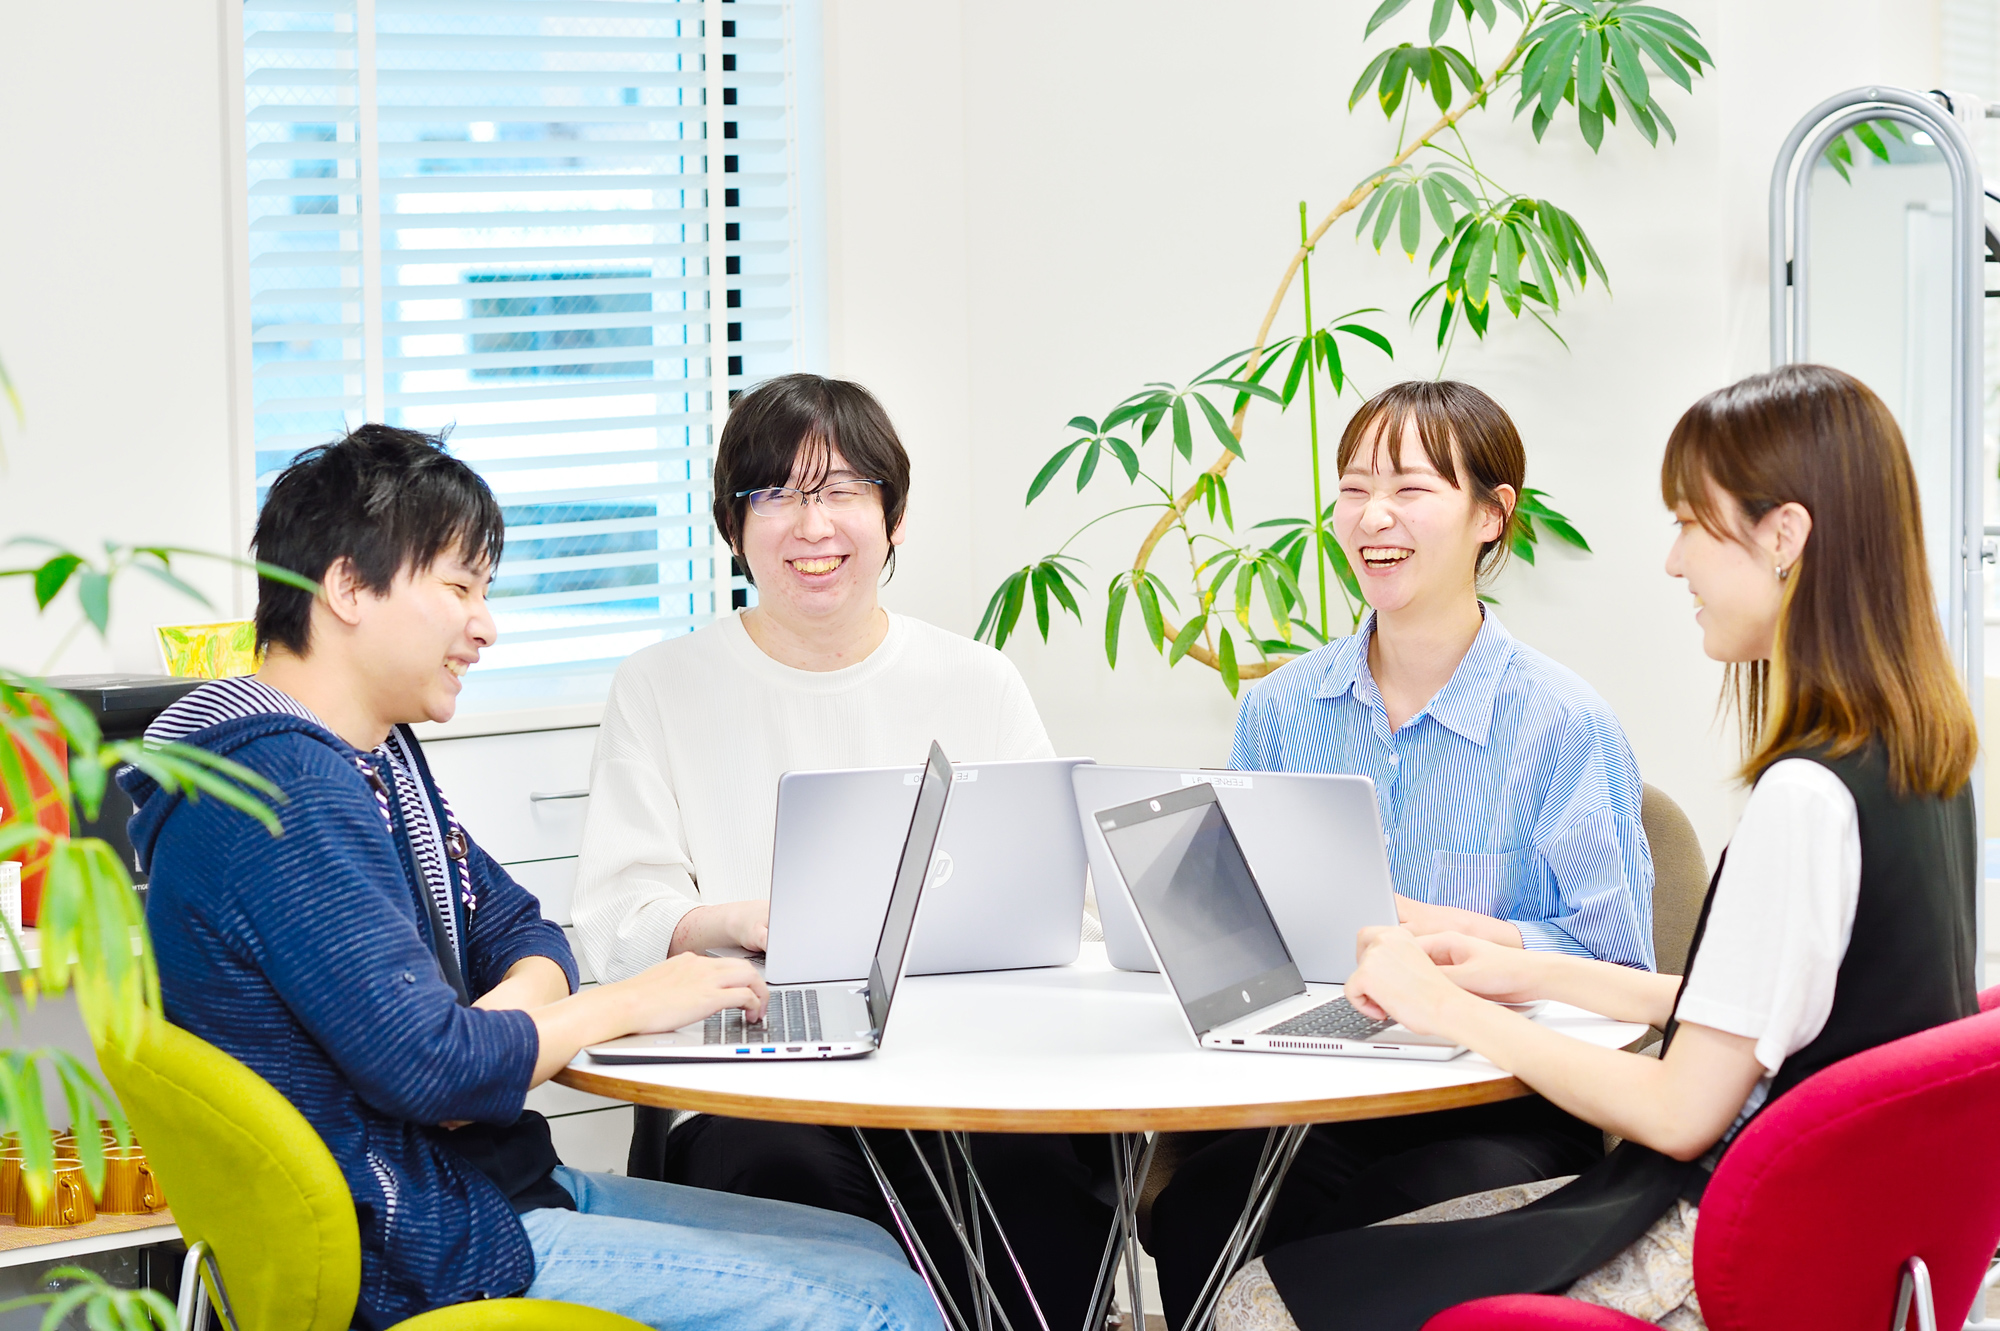 東京本社を中心に、名古屋事業所や顧客先などで、20代から50代までのメンバーが和気あいあいと仕事に取り組んでいる。